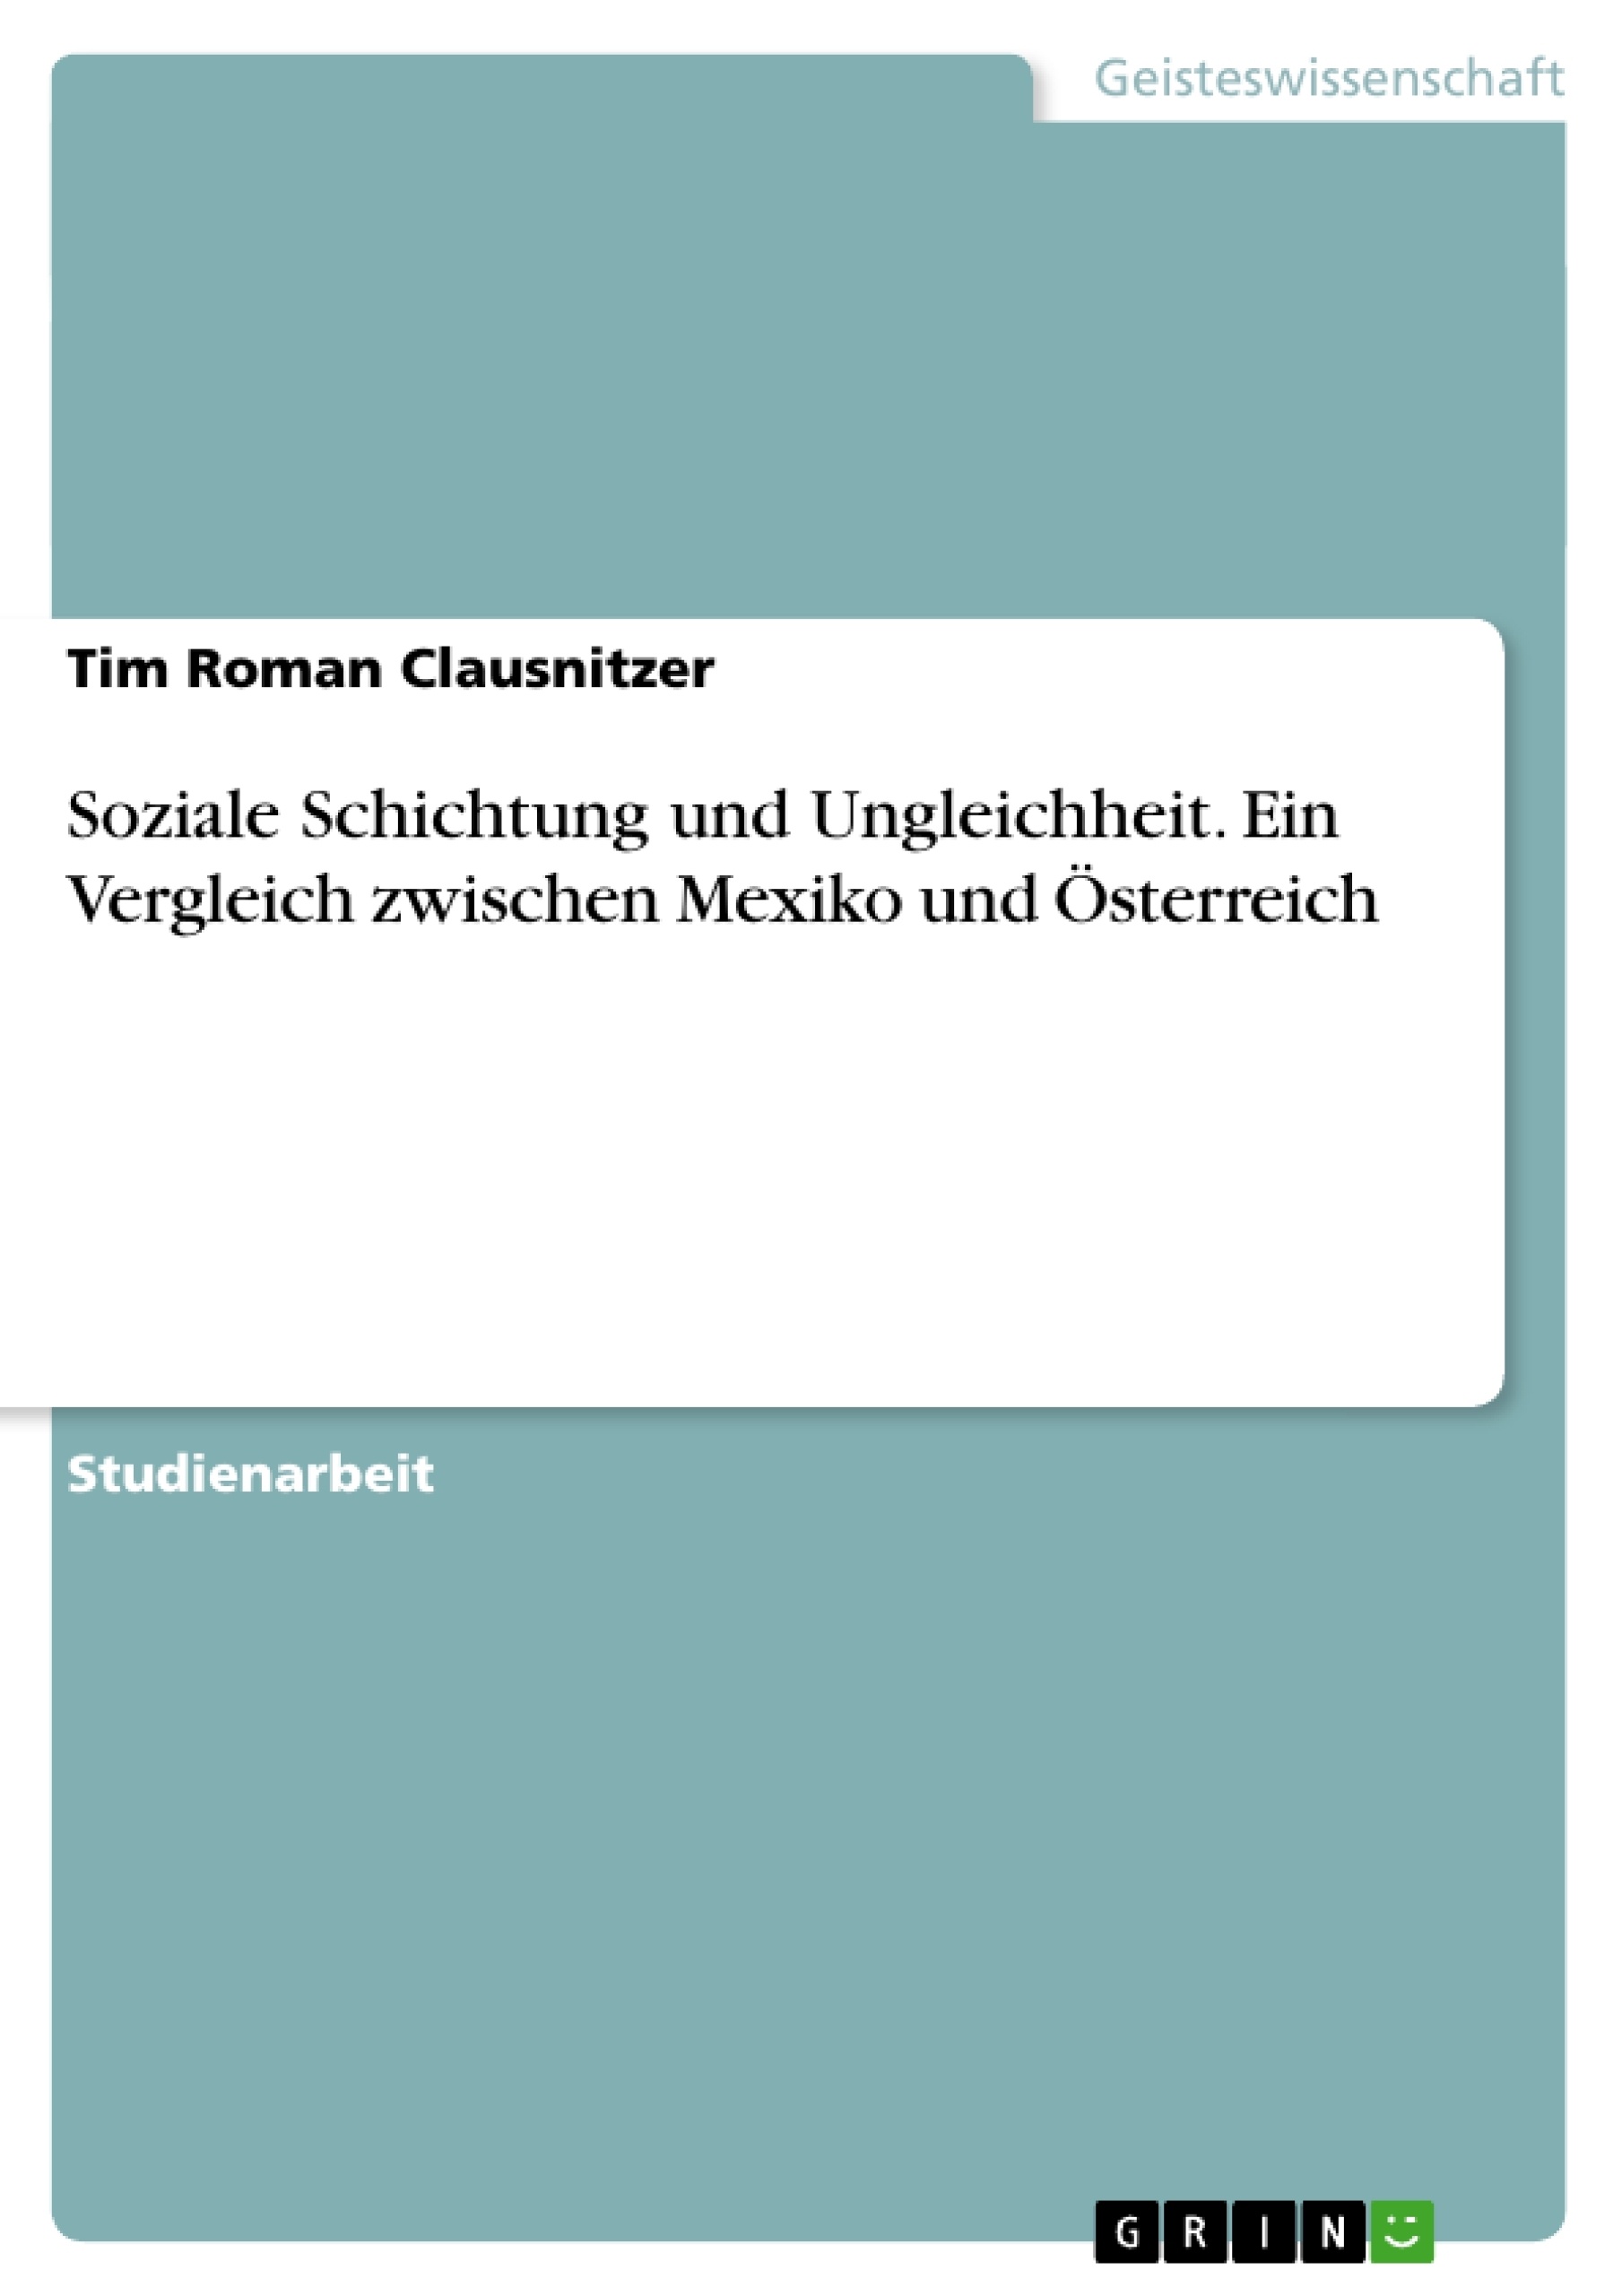 Titel: Soziale Schichtung und Ungleichheit.
Ein Vergleich zwischen Mexiko und Österreich